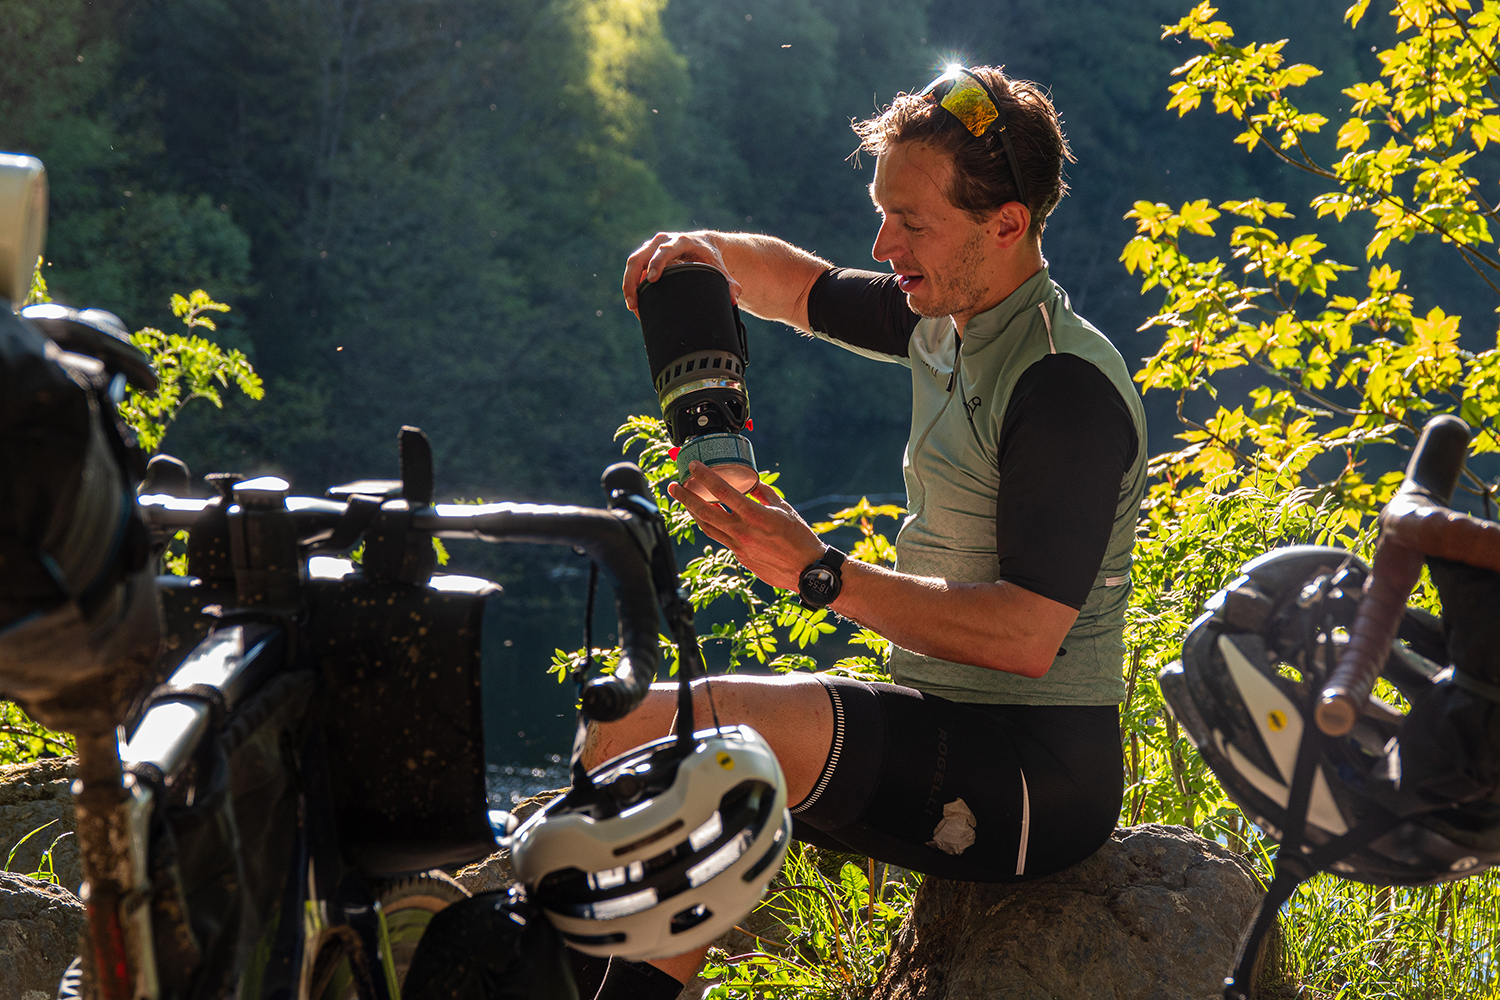 Een moment van rust tijdens de tocht, waarbij koffie wordt genoten in de buitenlucht, gekleed in Rogelli fietskleding.